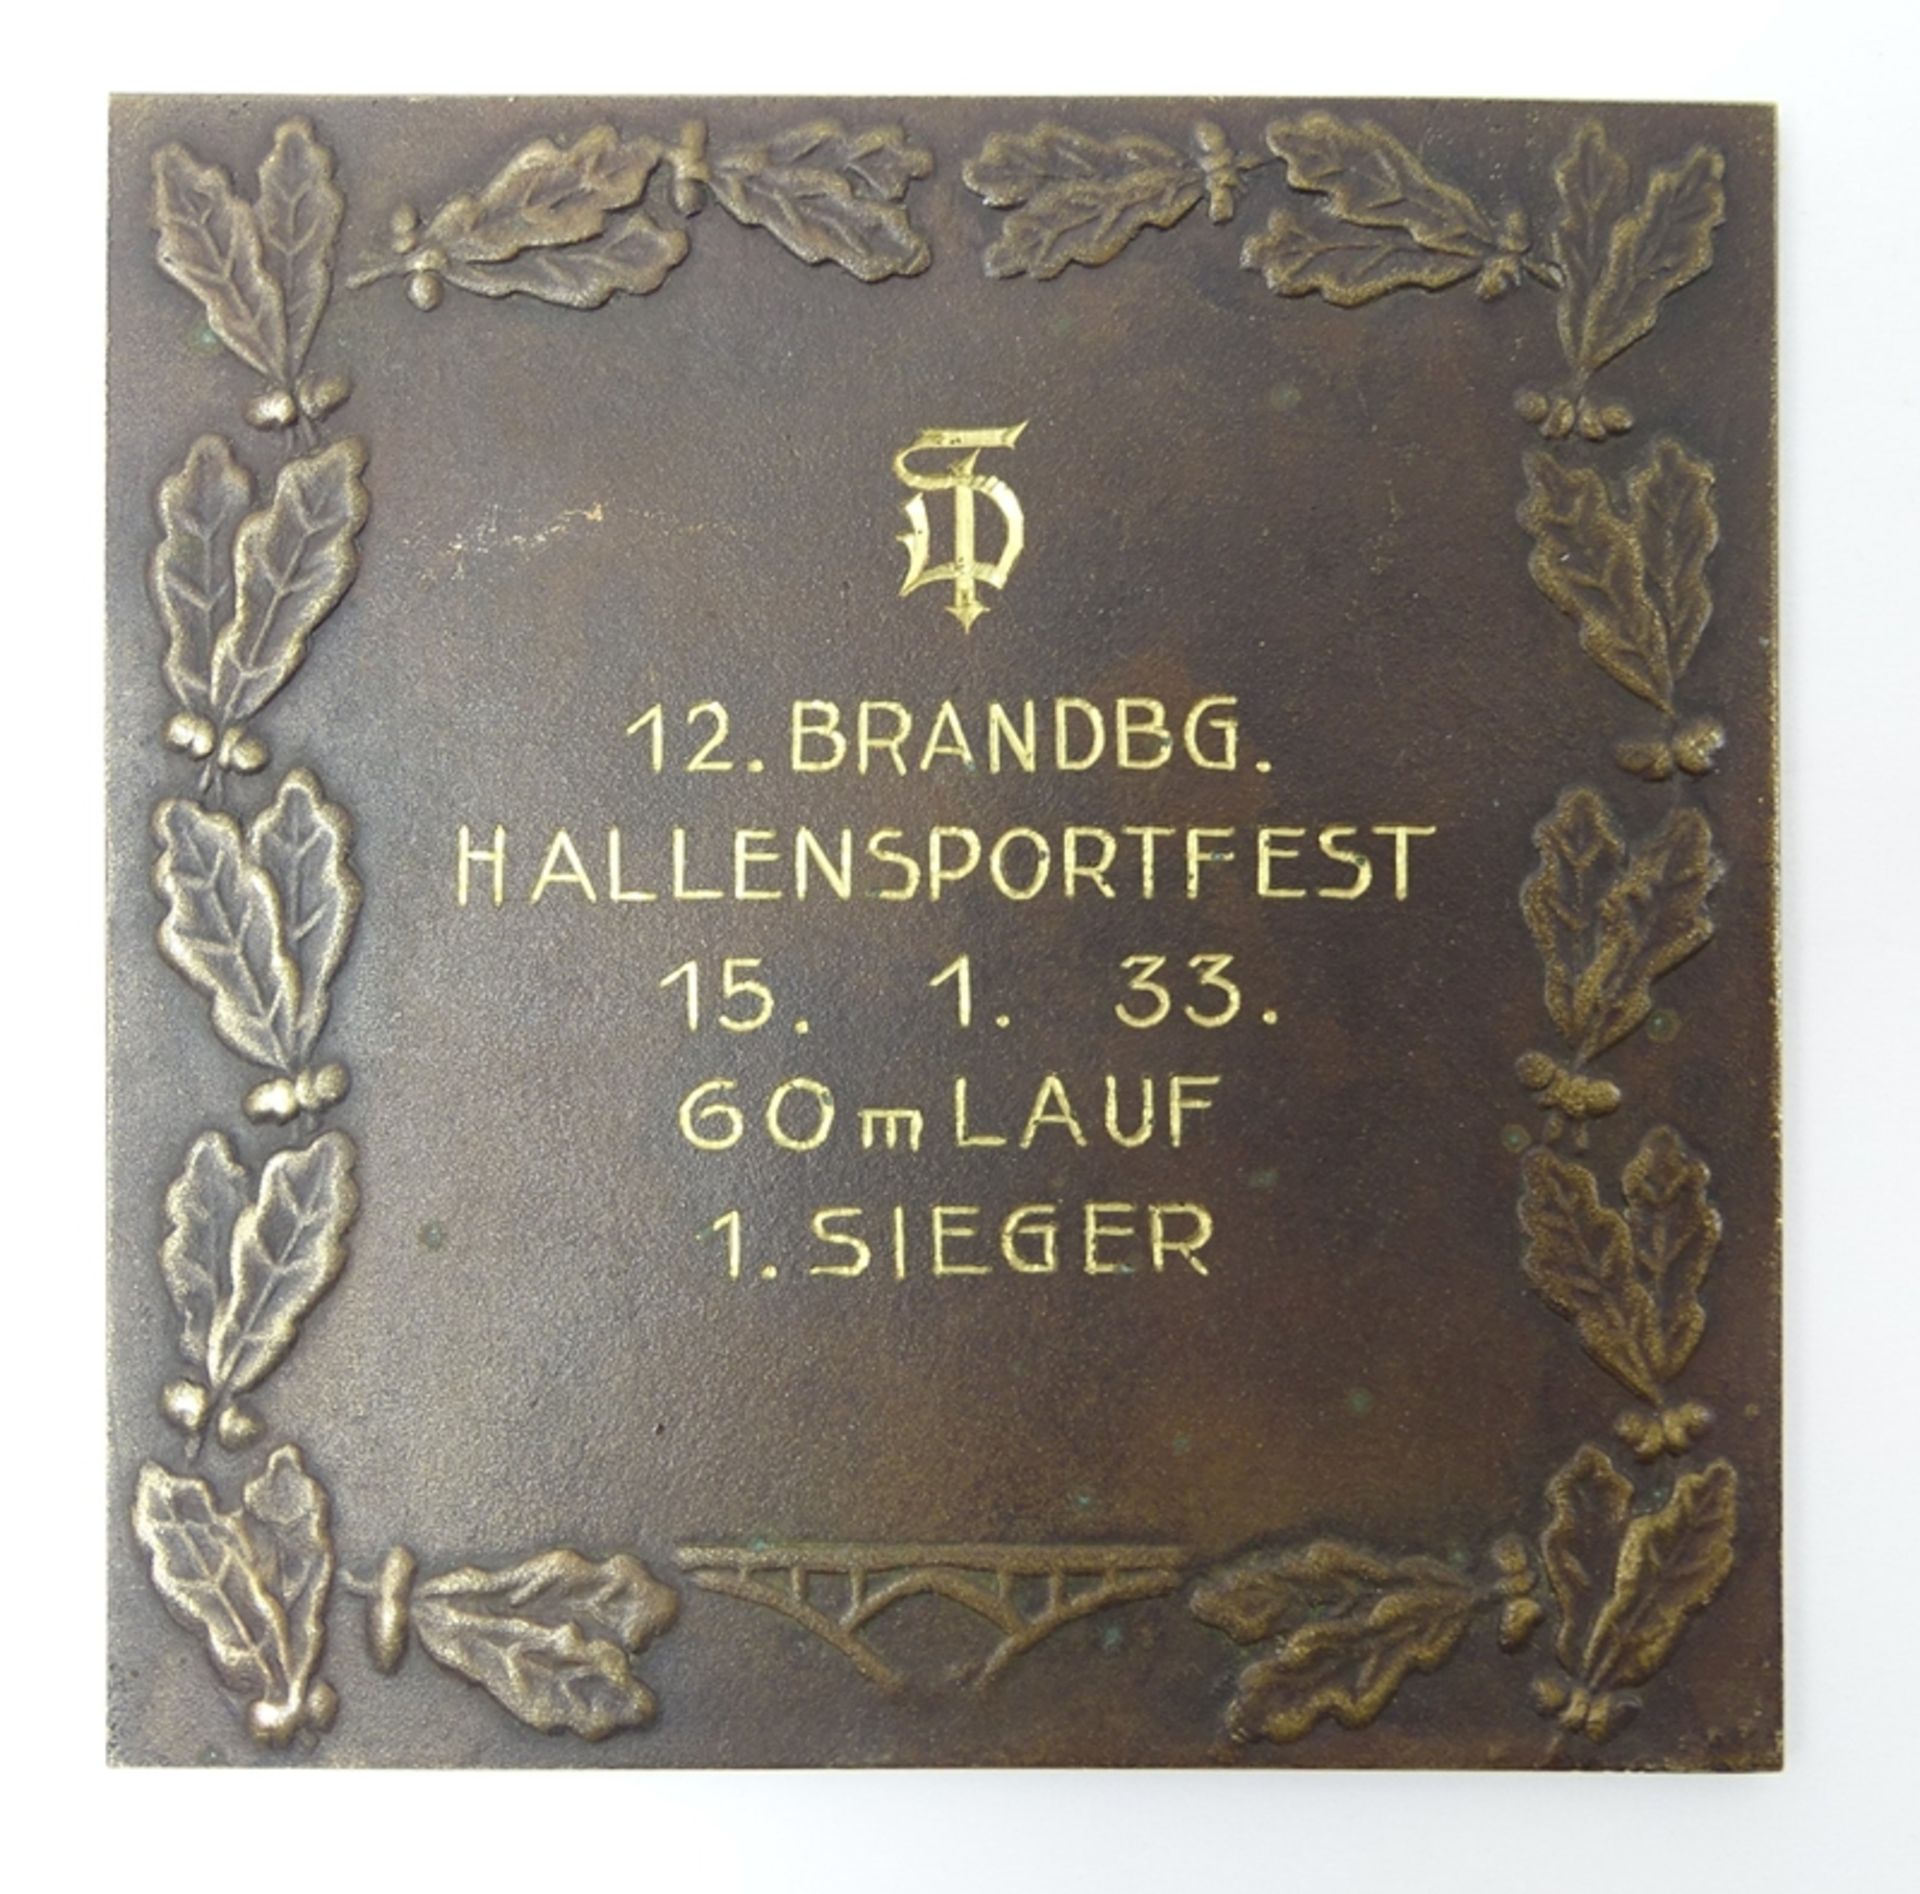 Siegerauszeichnung 12. Brandenburger Hallensportfest 1933, Bronze, Entwurf v. Oskar Glöckler, - Bild 2 aus 2